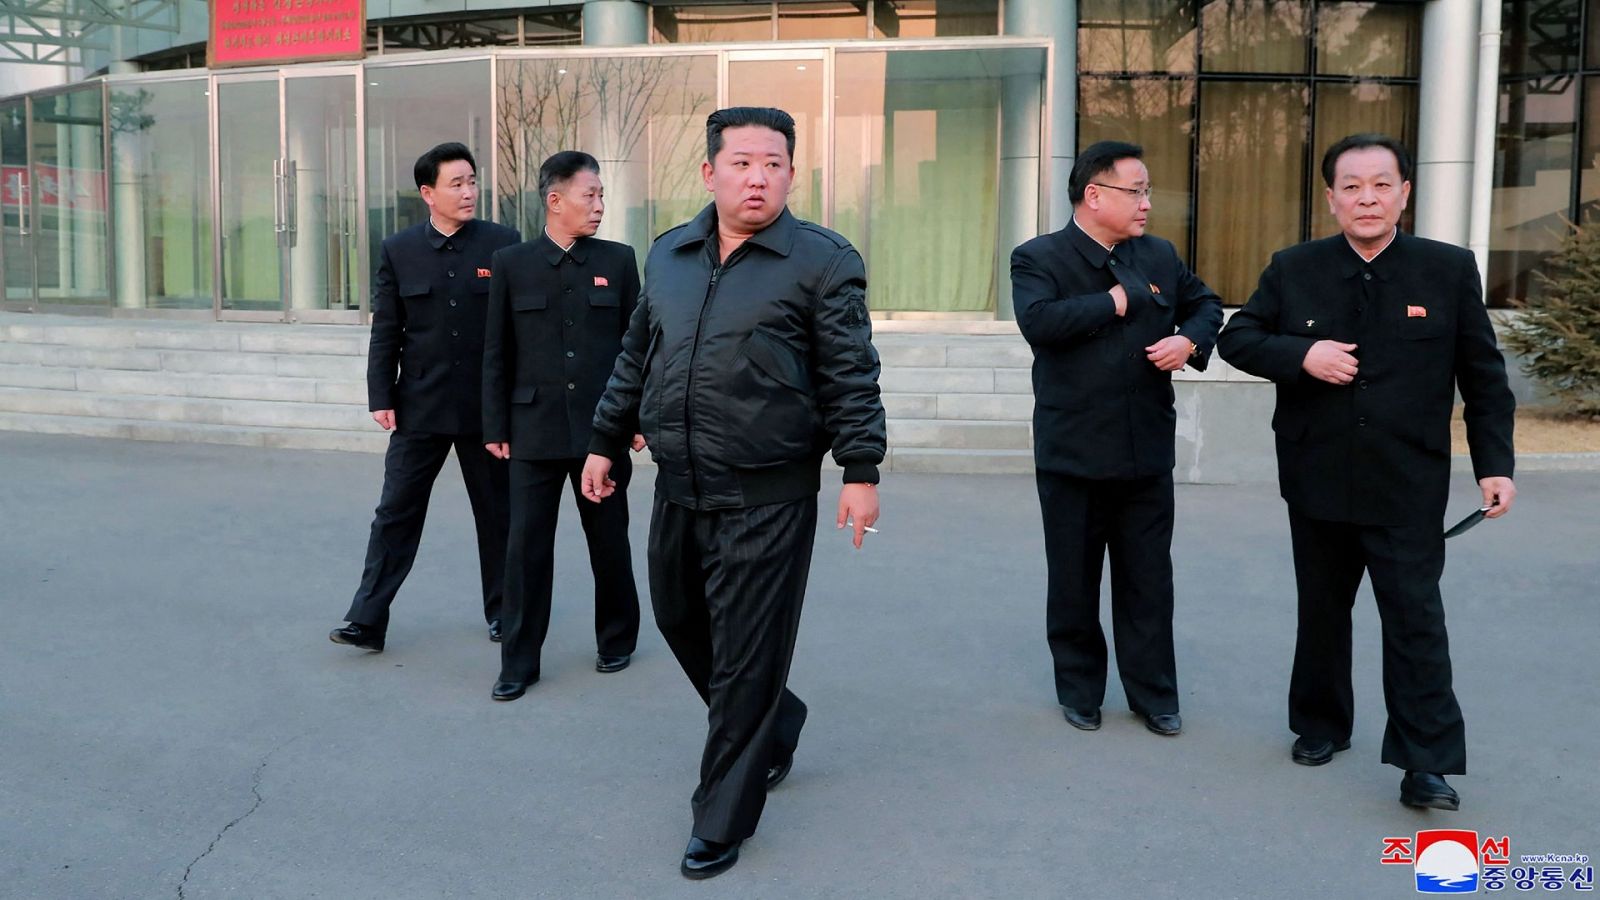 El líder norcoreano Kim Jong-un (C) inspecciona la Administración Nacional de Desarrollo Aeroespacial en Pyongyang